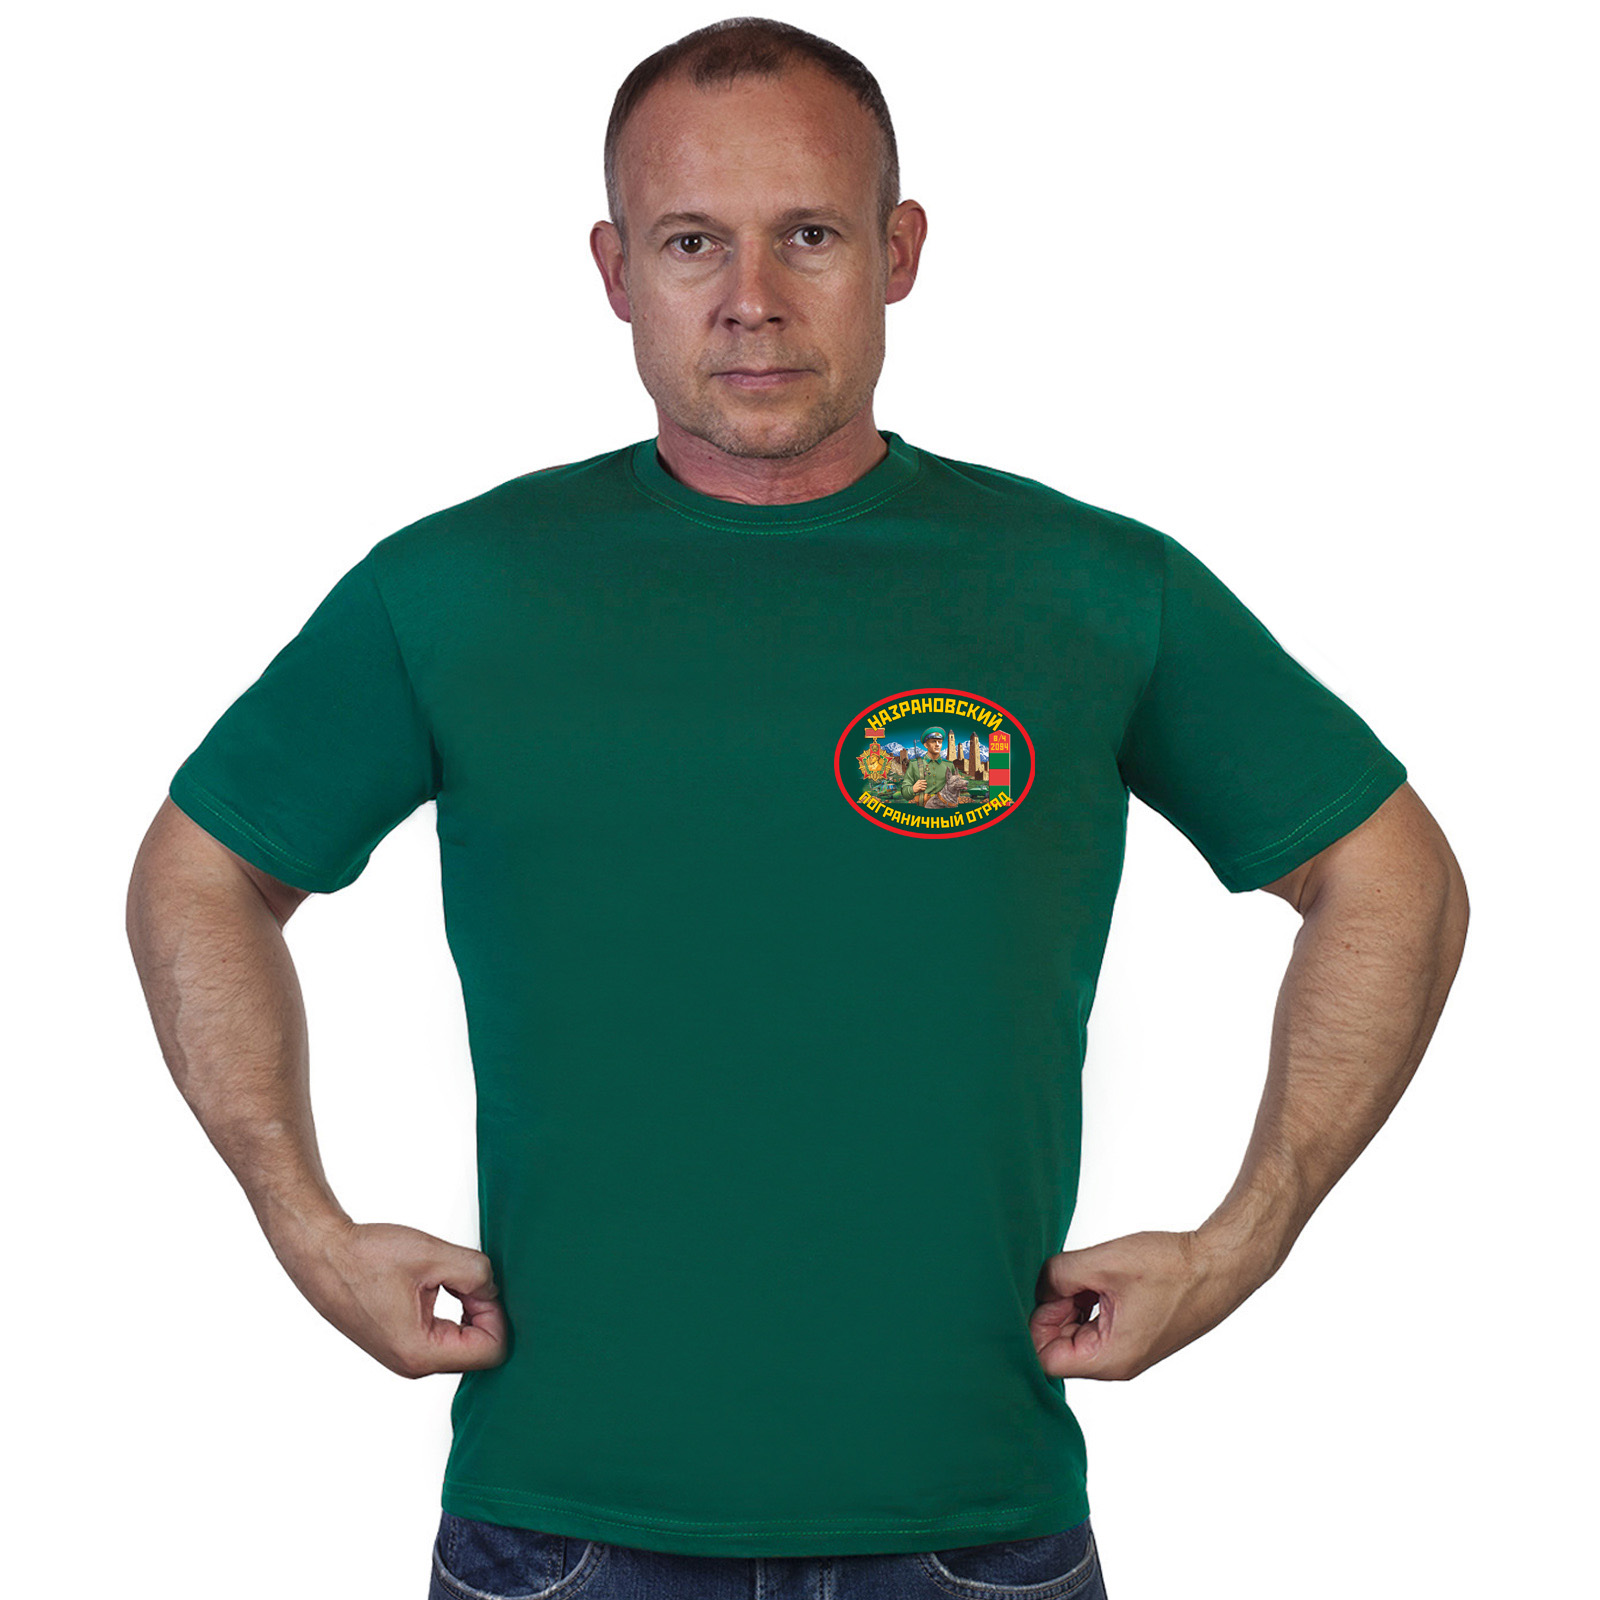 Купить в интернет магазине футболку Назрановский пограничный отряд